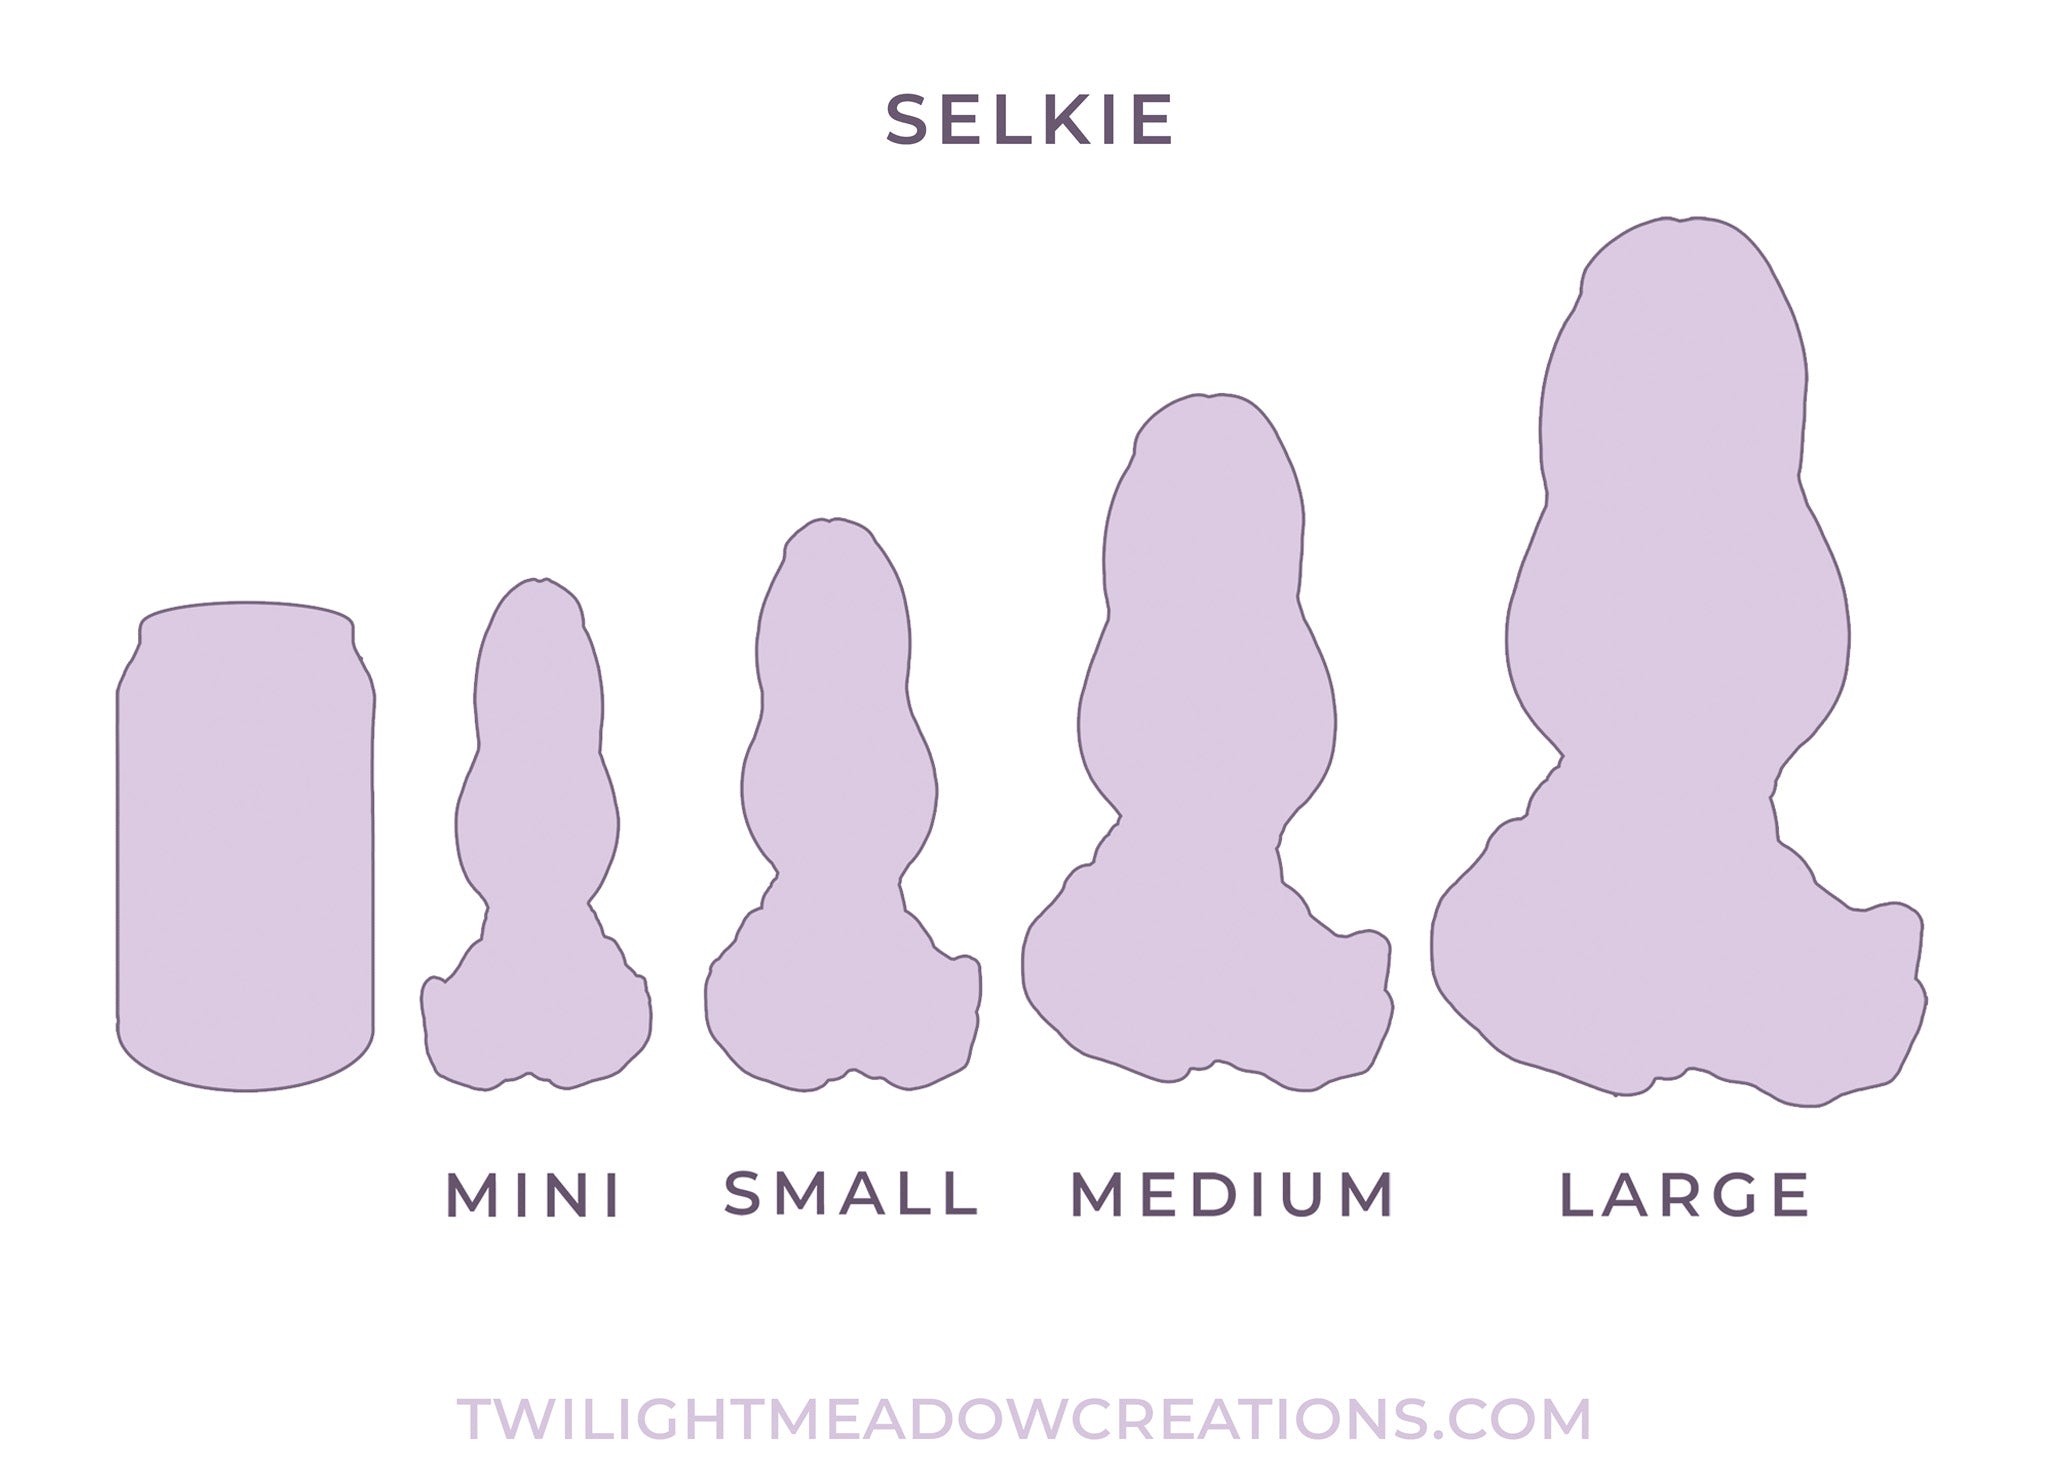 Mini Selkie (Firmness: Medium)